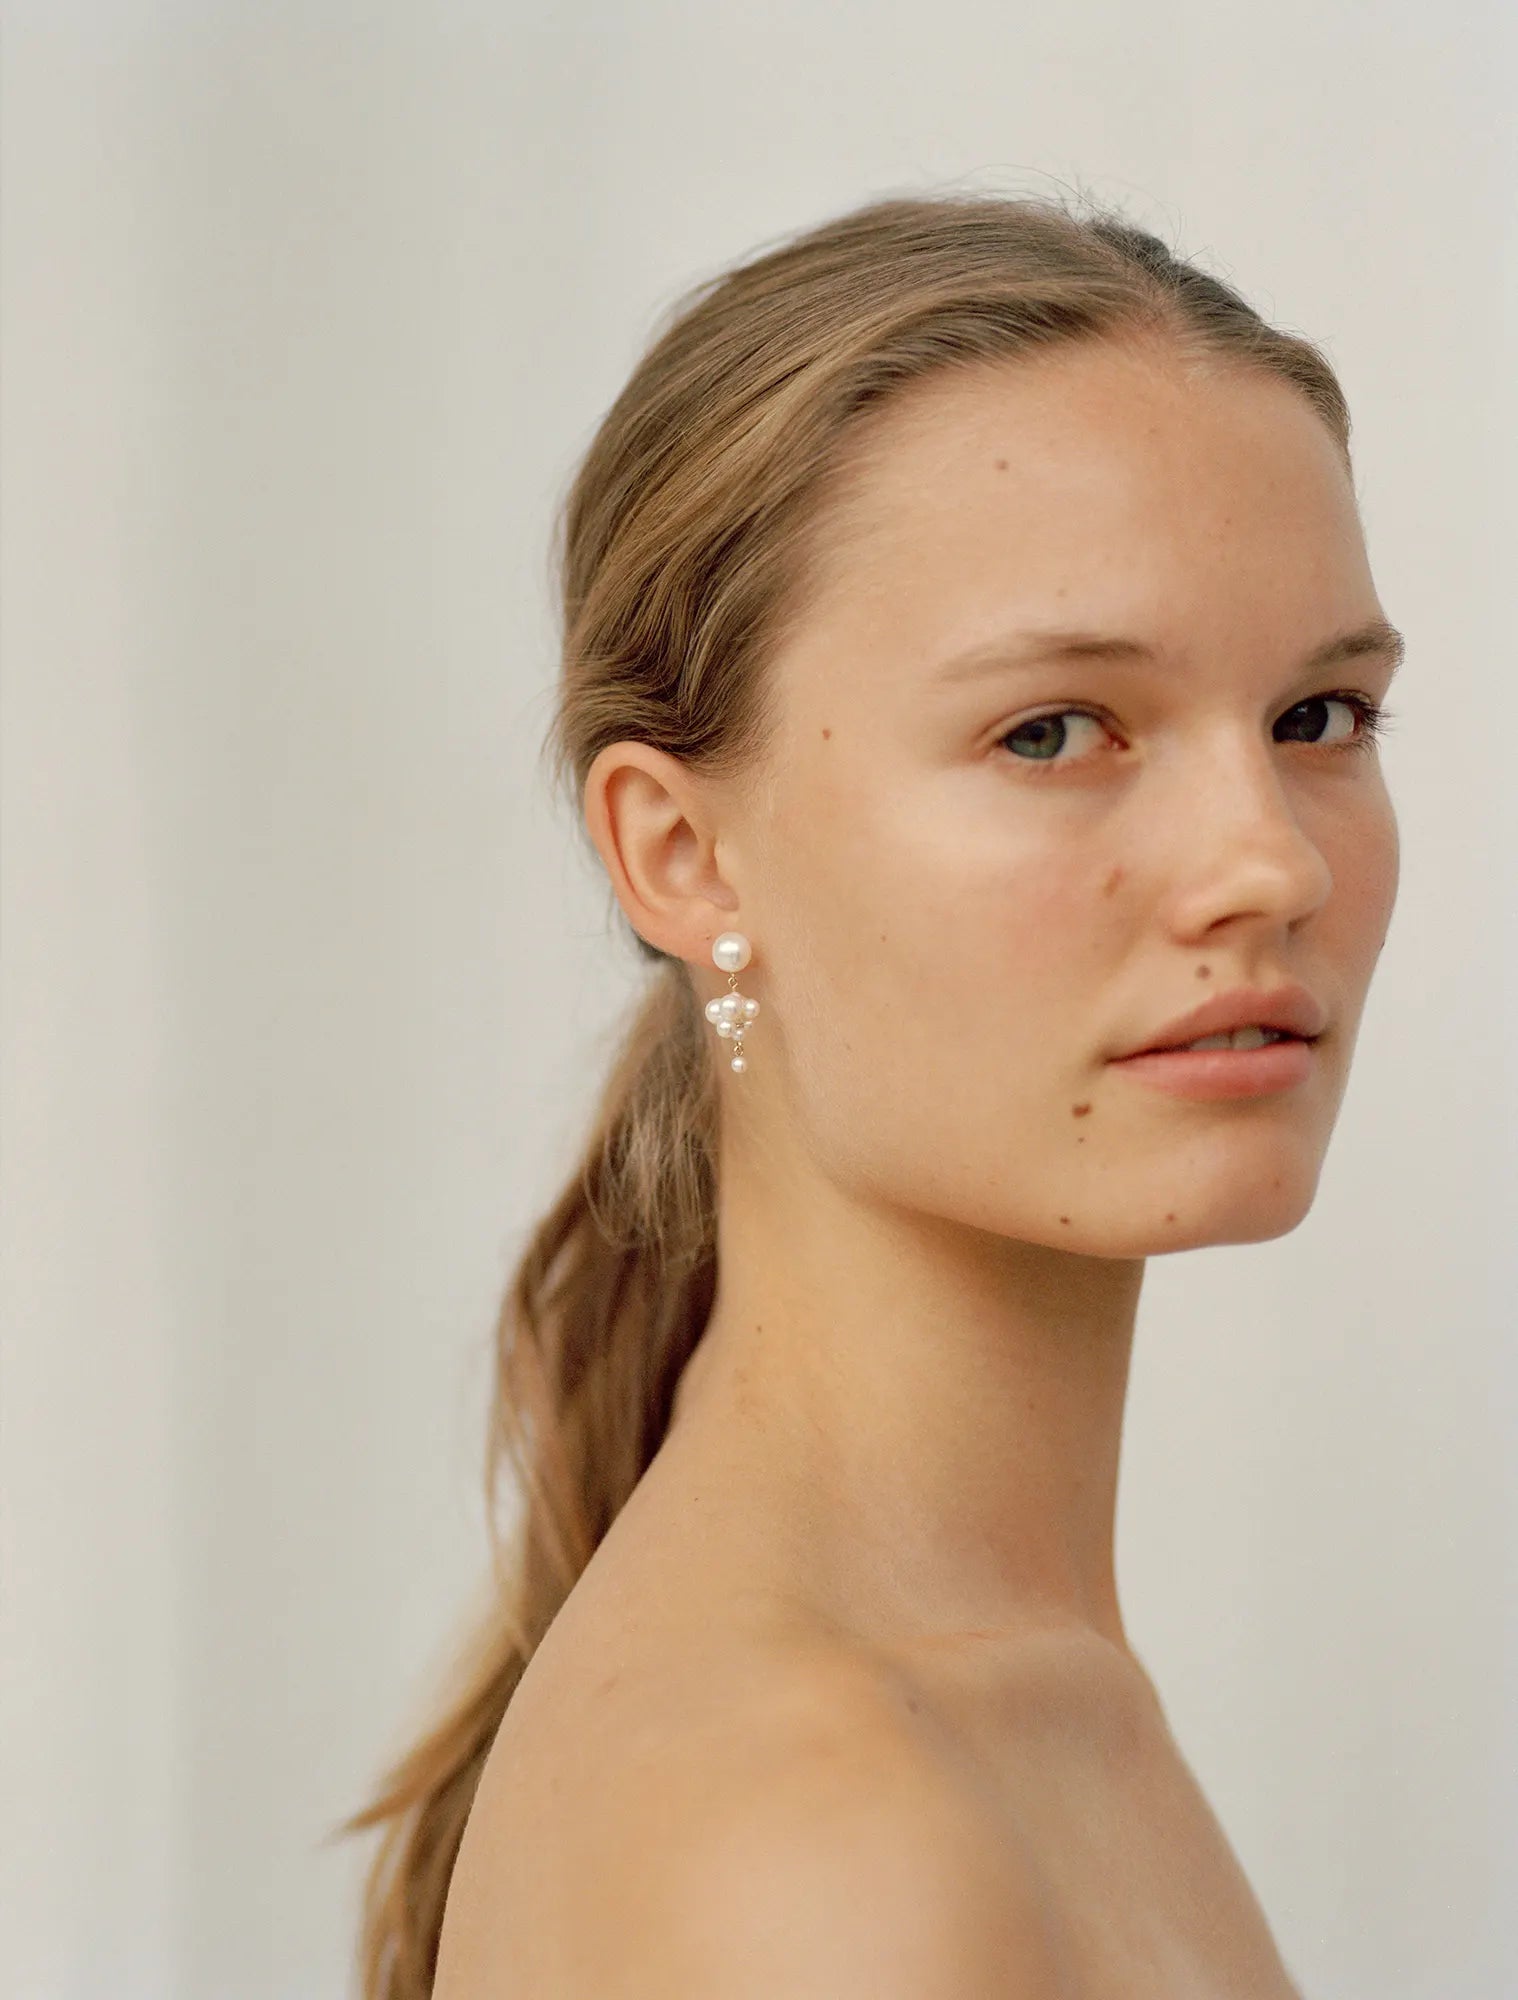 Model wearing Petite Celli earring